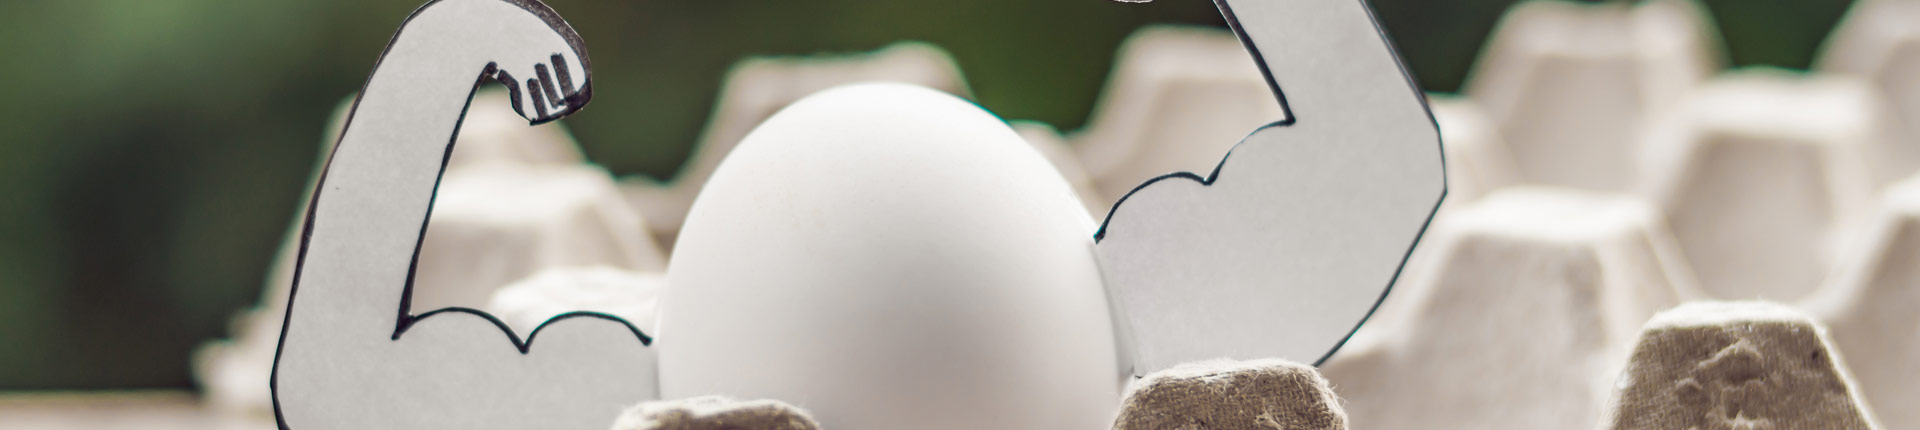 Czy warto kupować białka jaj? Płynne białko jaj